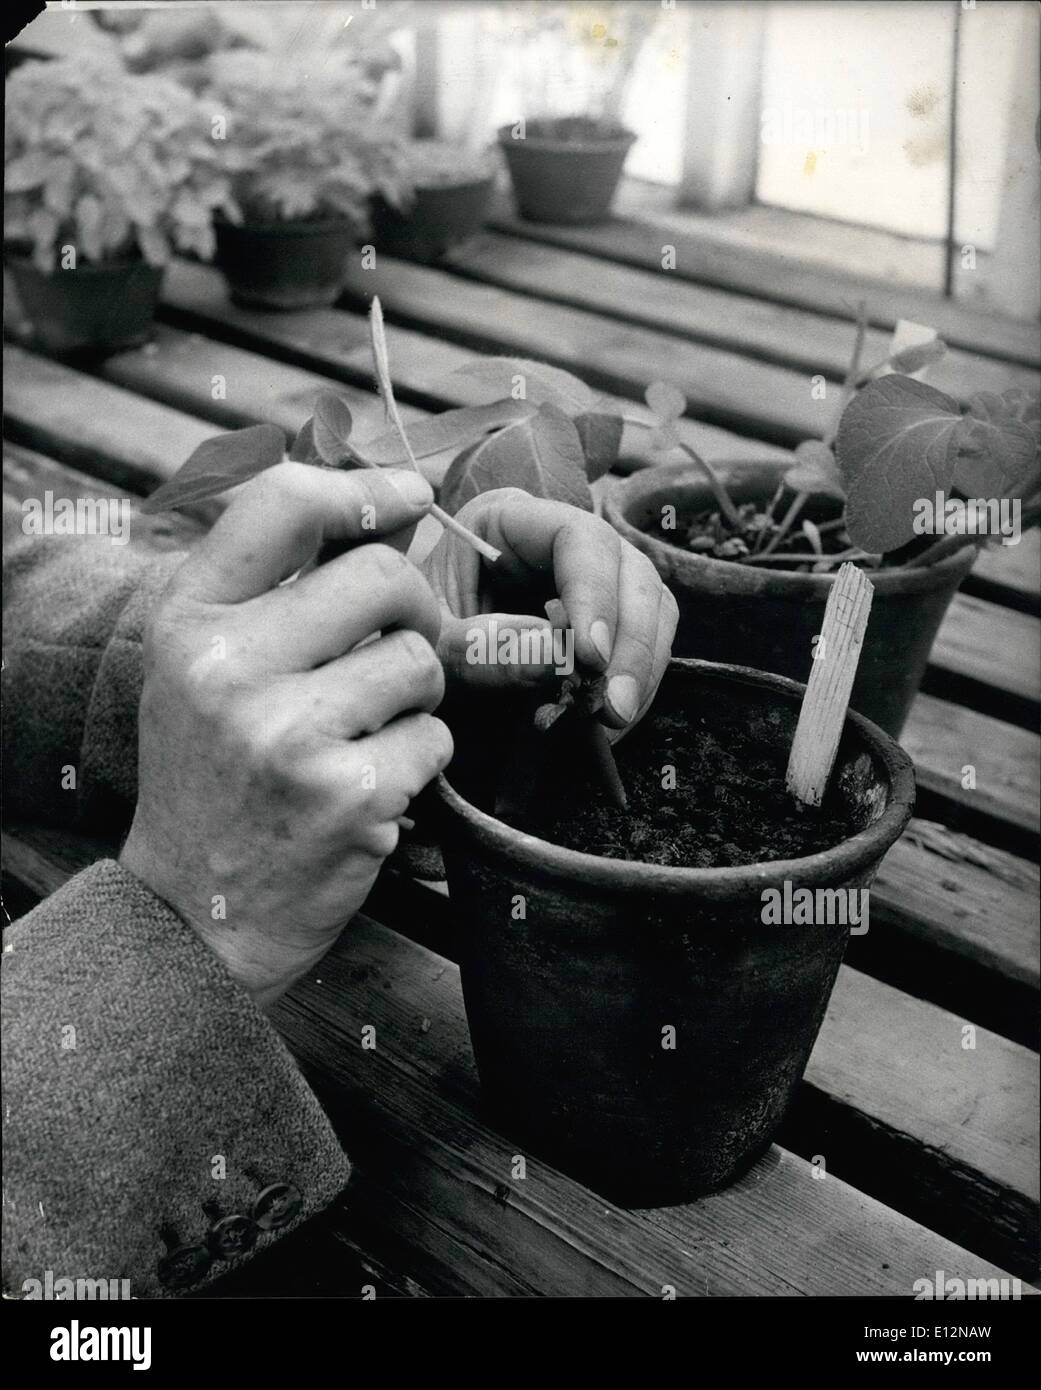 24. Februar 2012 - auf der Suche nach der perfekten Kartoffel. eine Pflanze durch Pfropfung infizierten Spross in Split Stängeln der Sämlinge zu infizieren. 15 Jahre Forschung für die perfekte Kartoffel. Schottland nach wie vor ist weltweit führend in Kartoffelzüchtung. Es war Mr. Williams Black Boghall Farm in der Nähe von Edinburgh, Schottland, der die Welt entdeckt; s beste und einwandfreie Kartoffeln im Jahr 1946 nach 20 Jahren daran zu arbeiten und nannte es '' Graig Boundty''. Forschung geht noch weiter, Achterbahn Stunt Krankheiten in Kartoffeln und verschiedene seltsamen Krankheiten, die es Wirkung. Dr. Black setzt seine Forschungen mit anderen Experten wie Dr. G Stockfoto